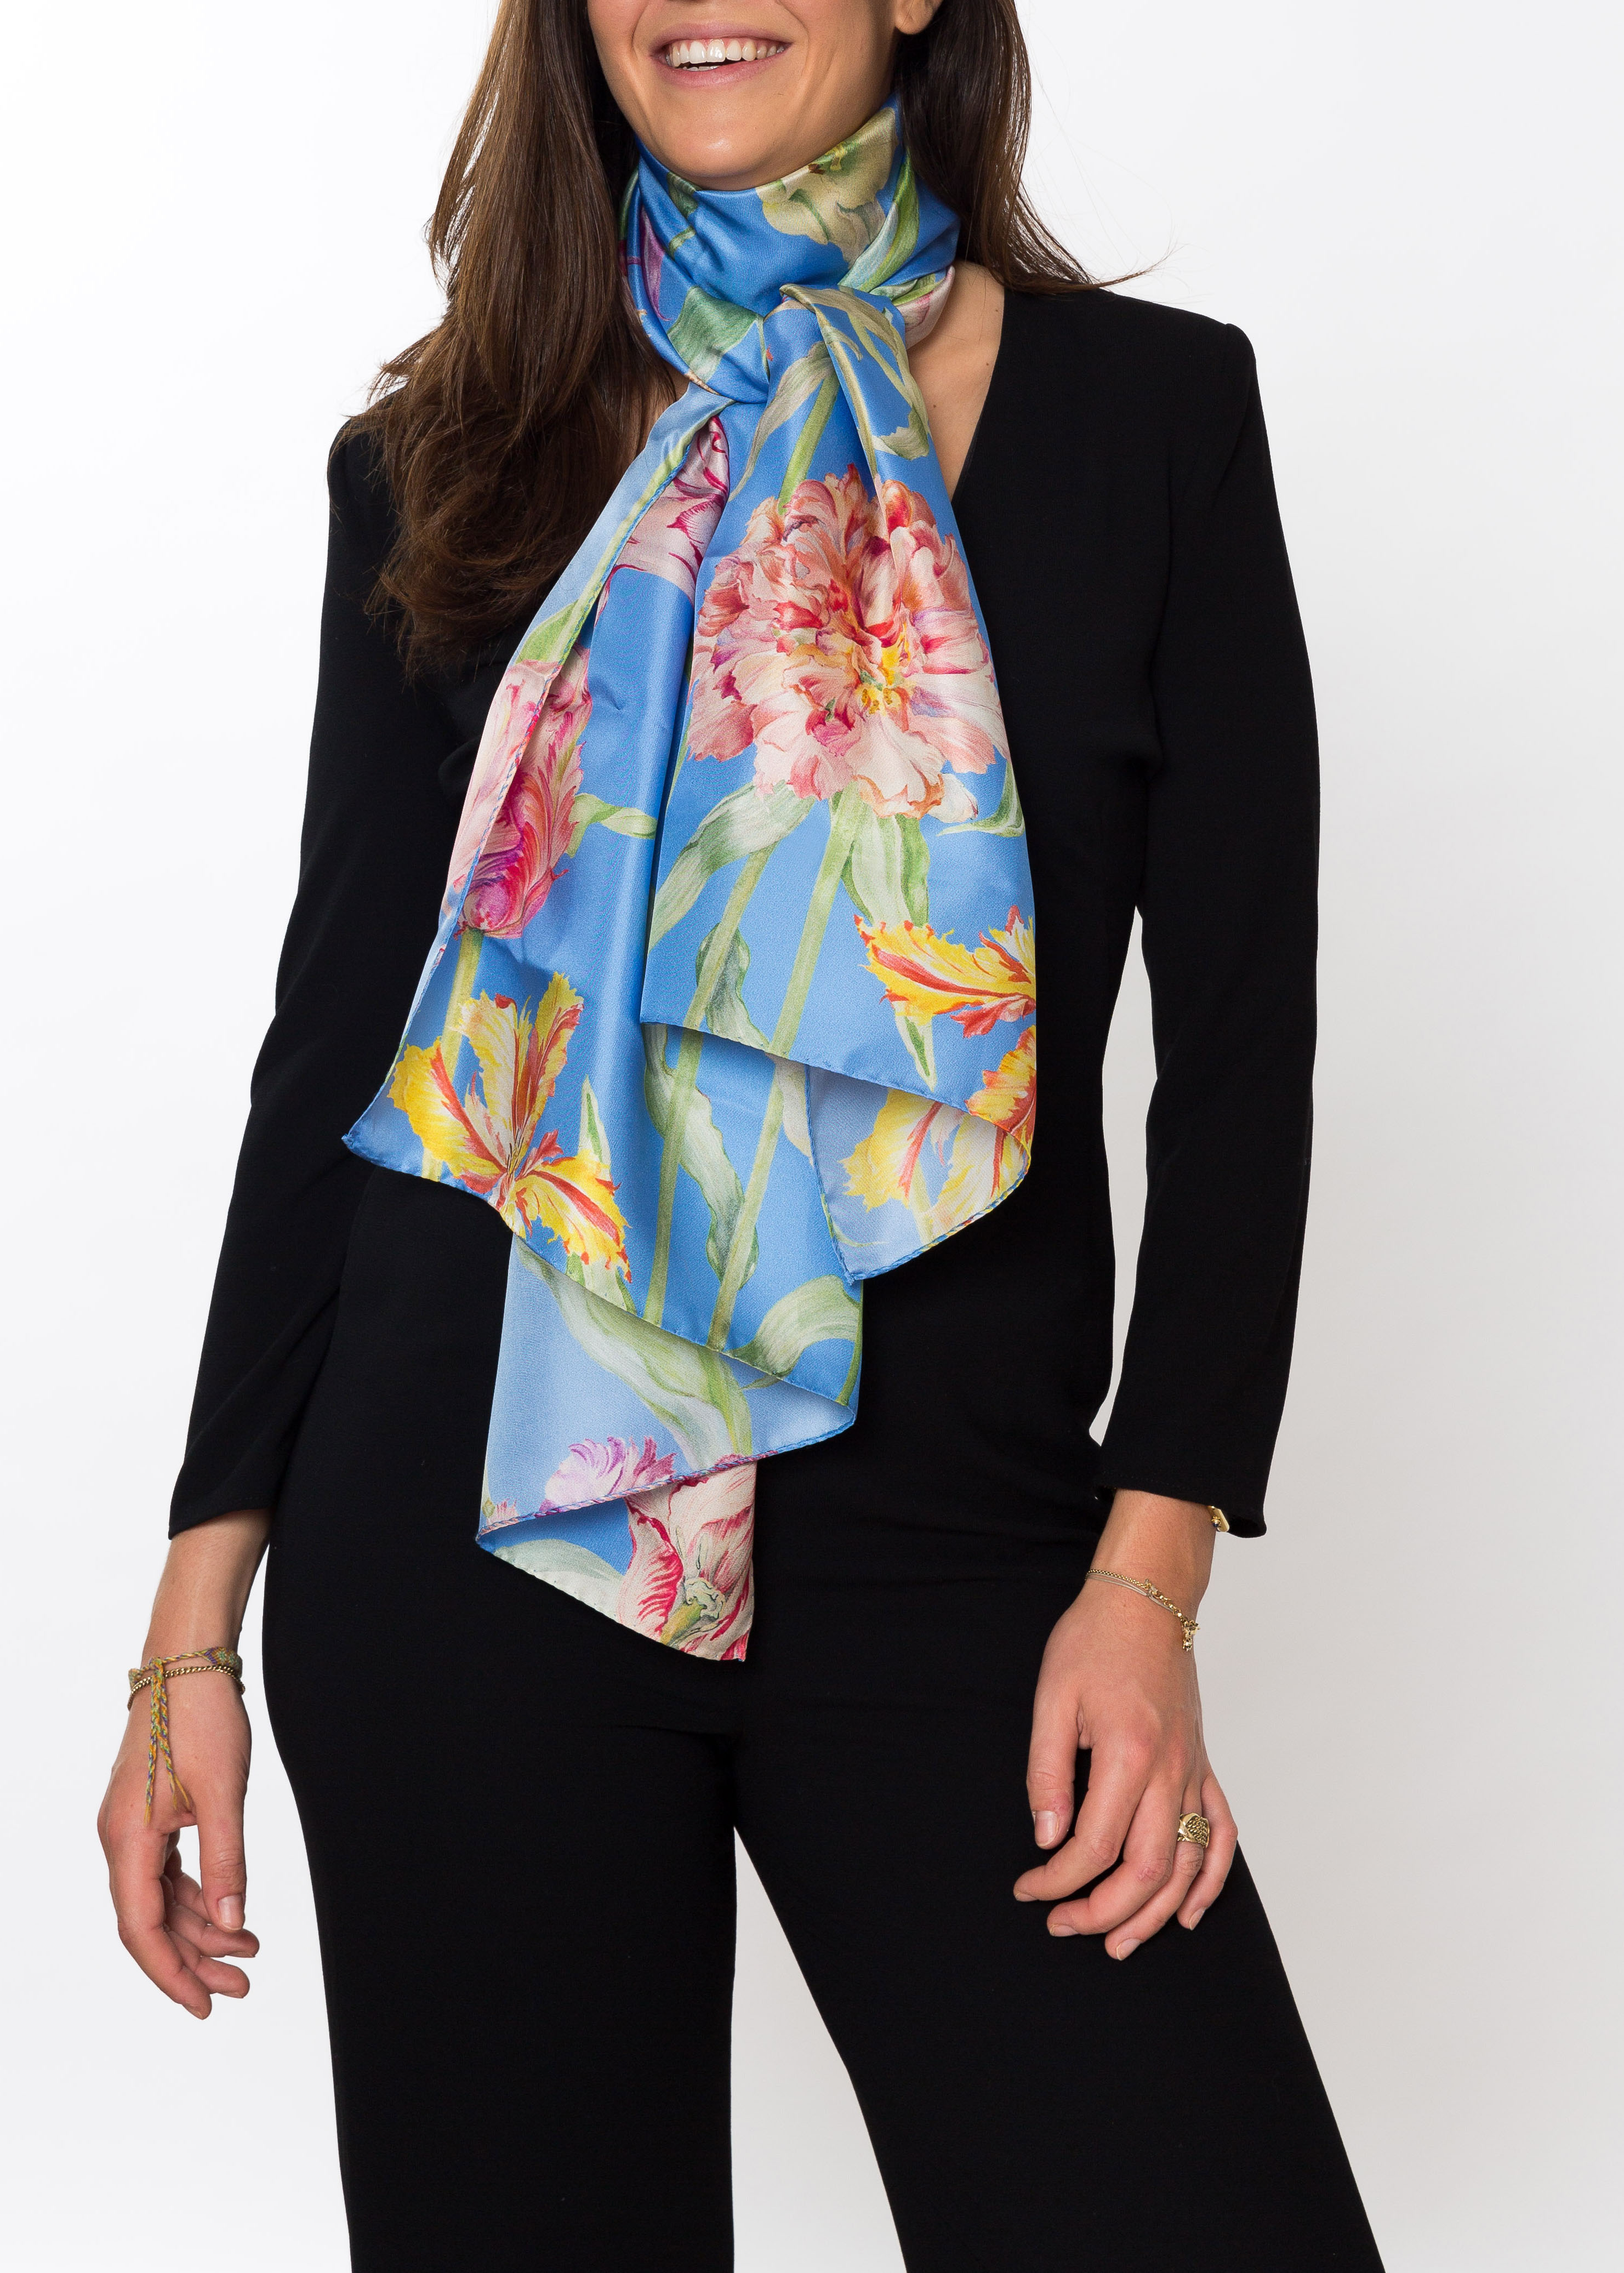 band Componist Bedrog Blauwe 100% zijde sjaal tulpen design 170 x 65cm gemaakt in Italie -  BeauBerger